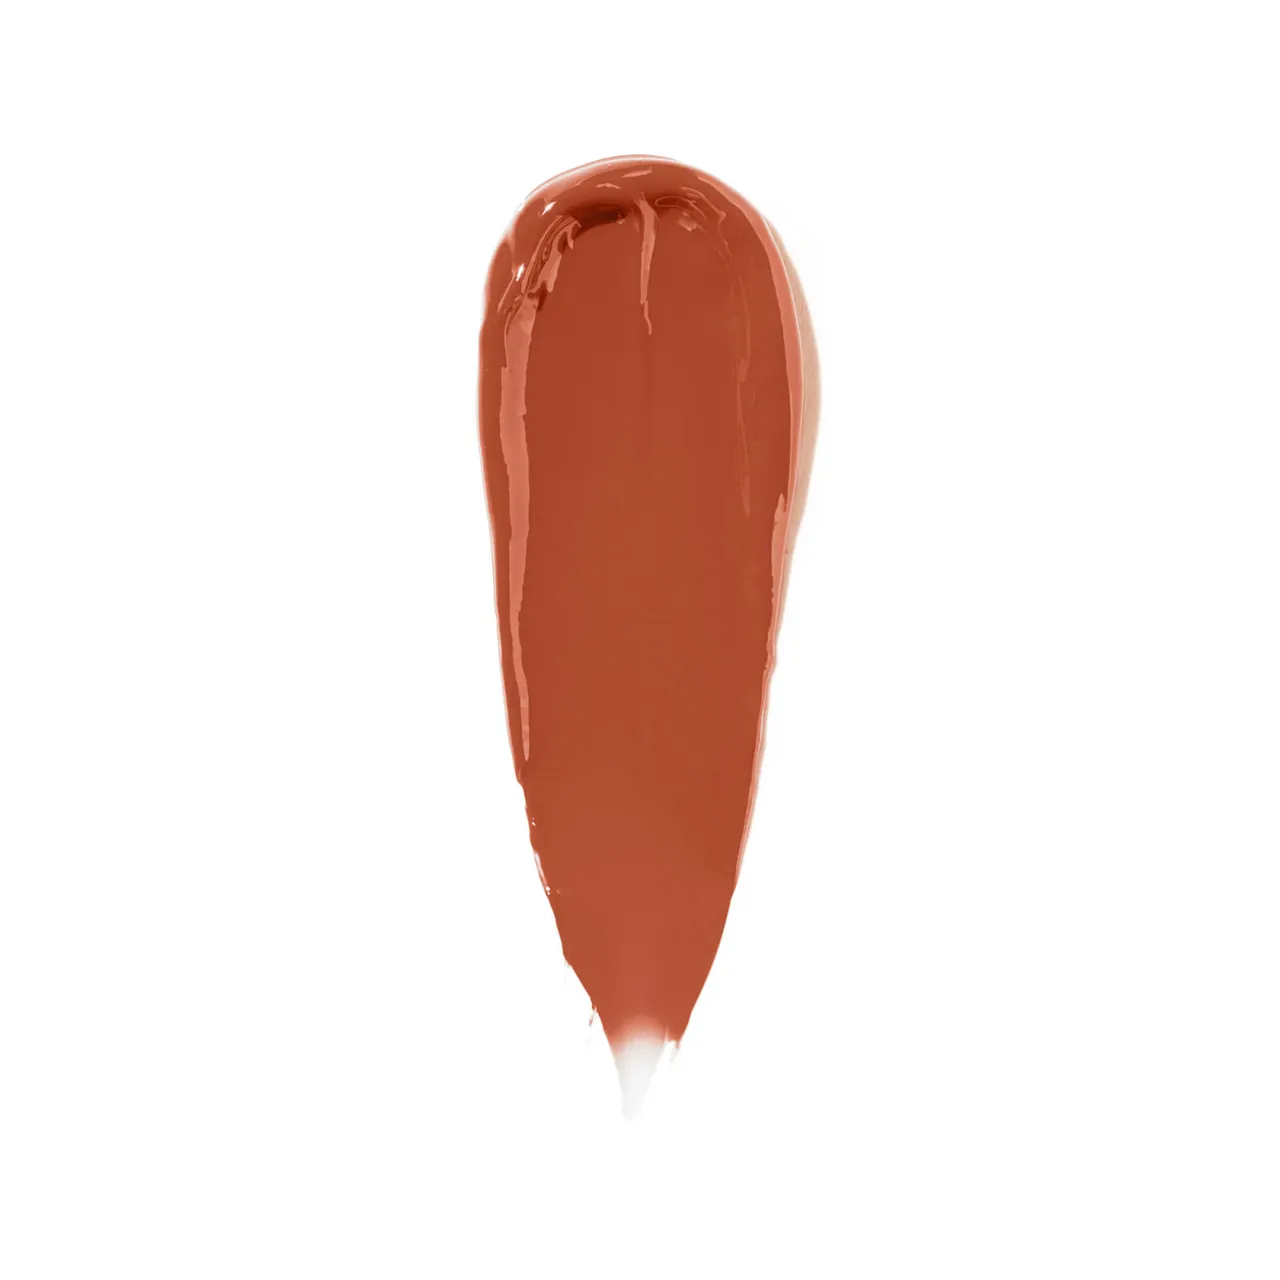 Bobbi Brown Luxe Lip Colour 3.8g (Various Shades) - Plaza Peach